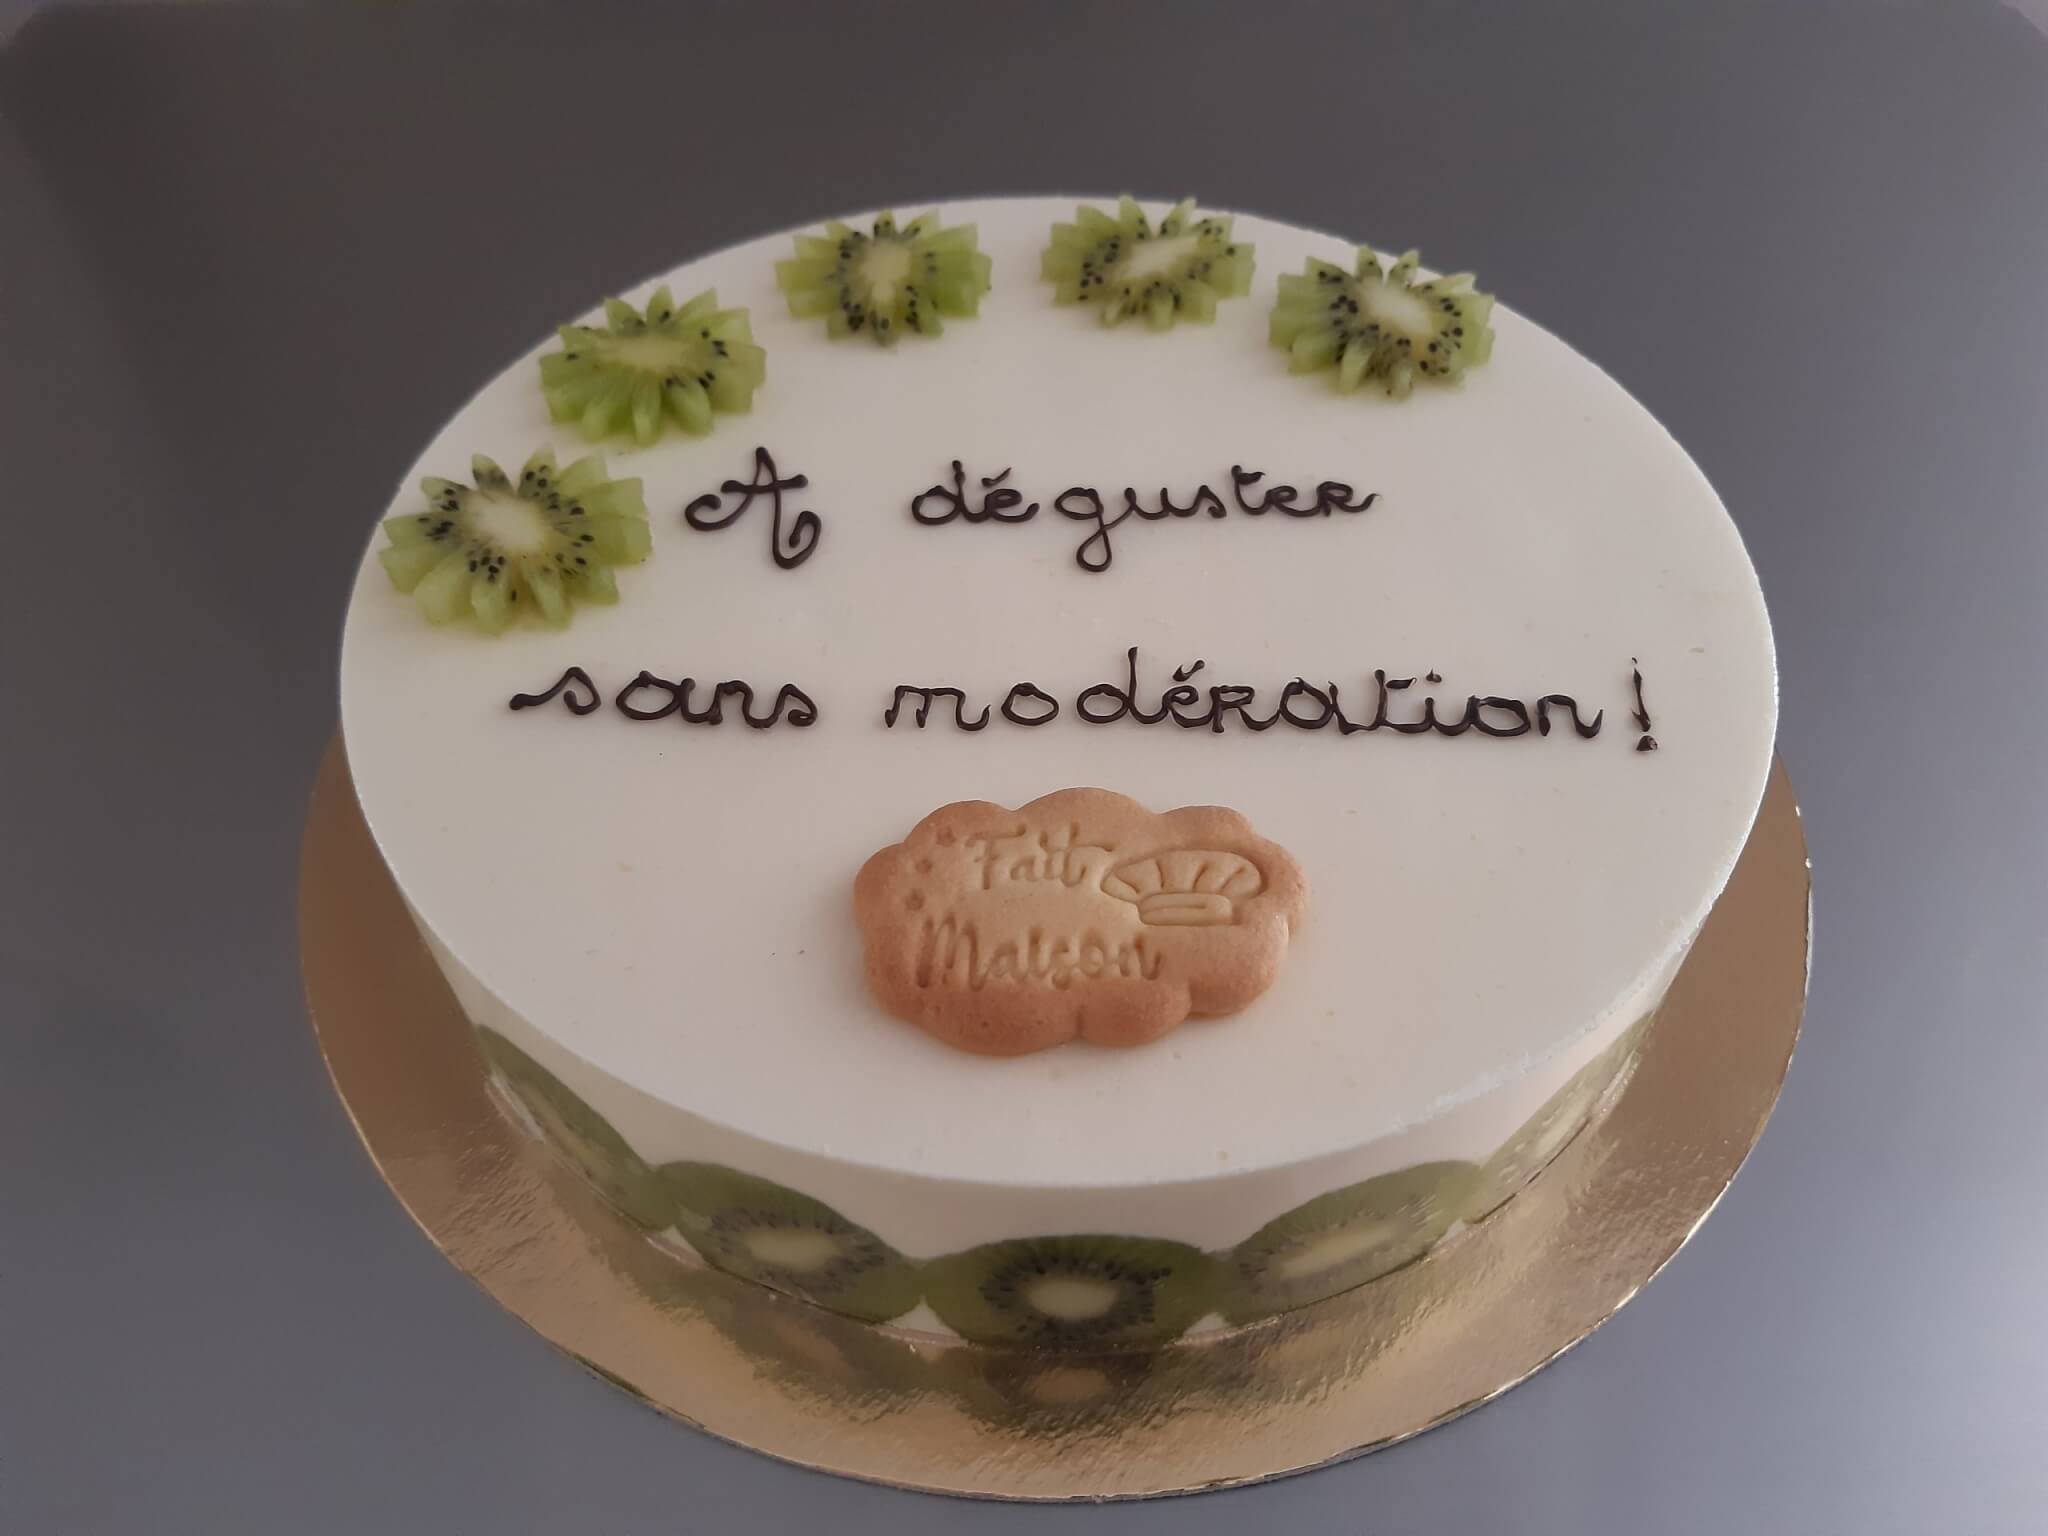 Kiwier à la crème mousseline - Autourdusucre  Soirée pâtisserie, Gâteaux  et desserts, Desserts français